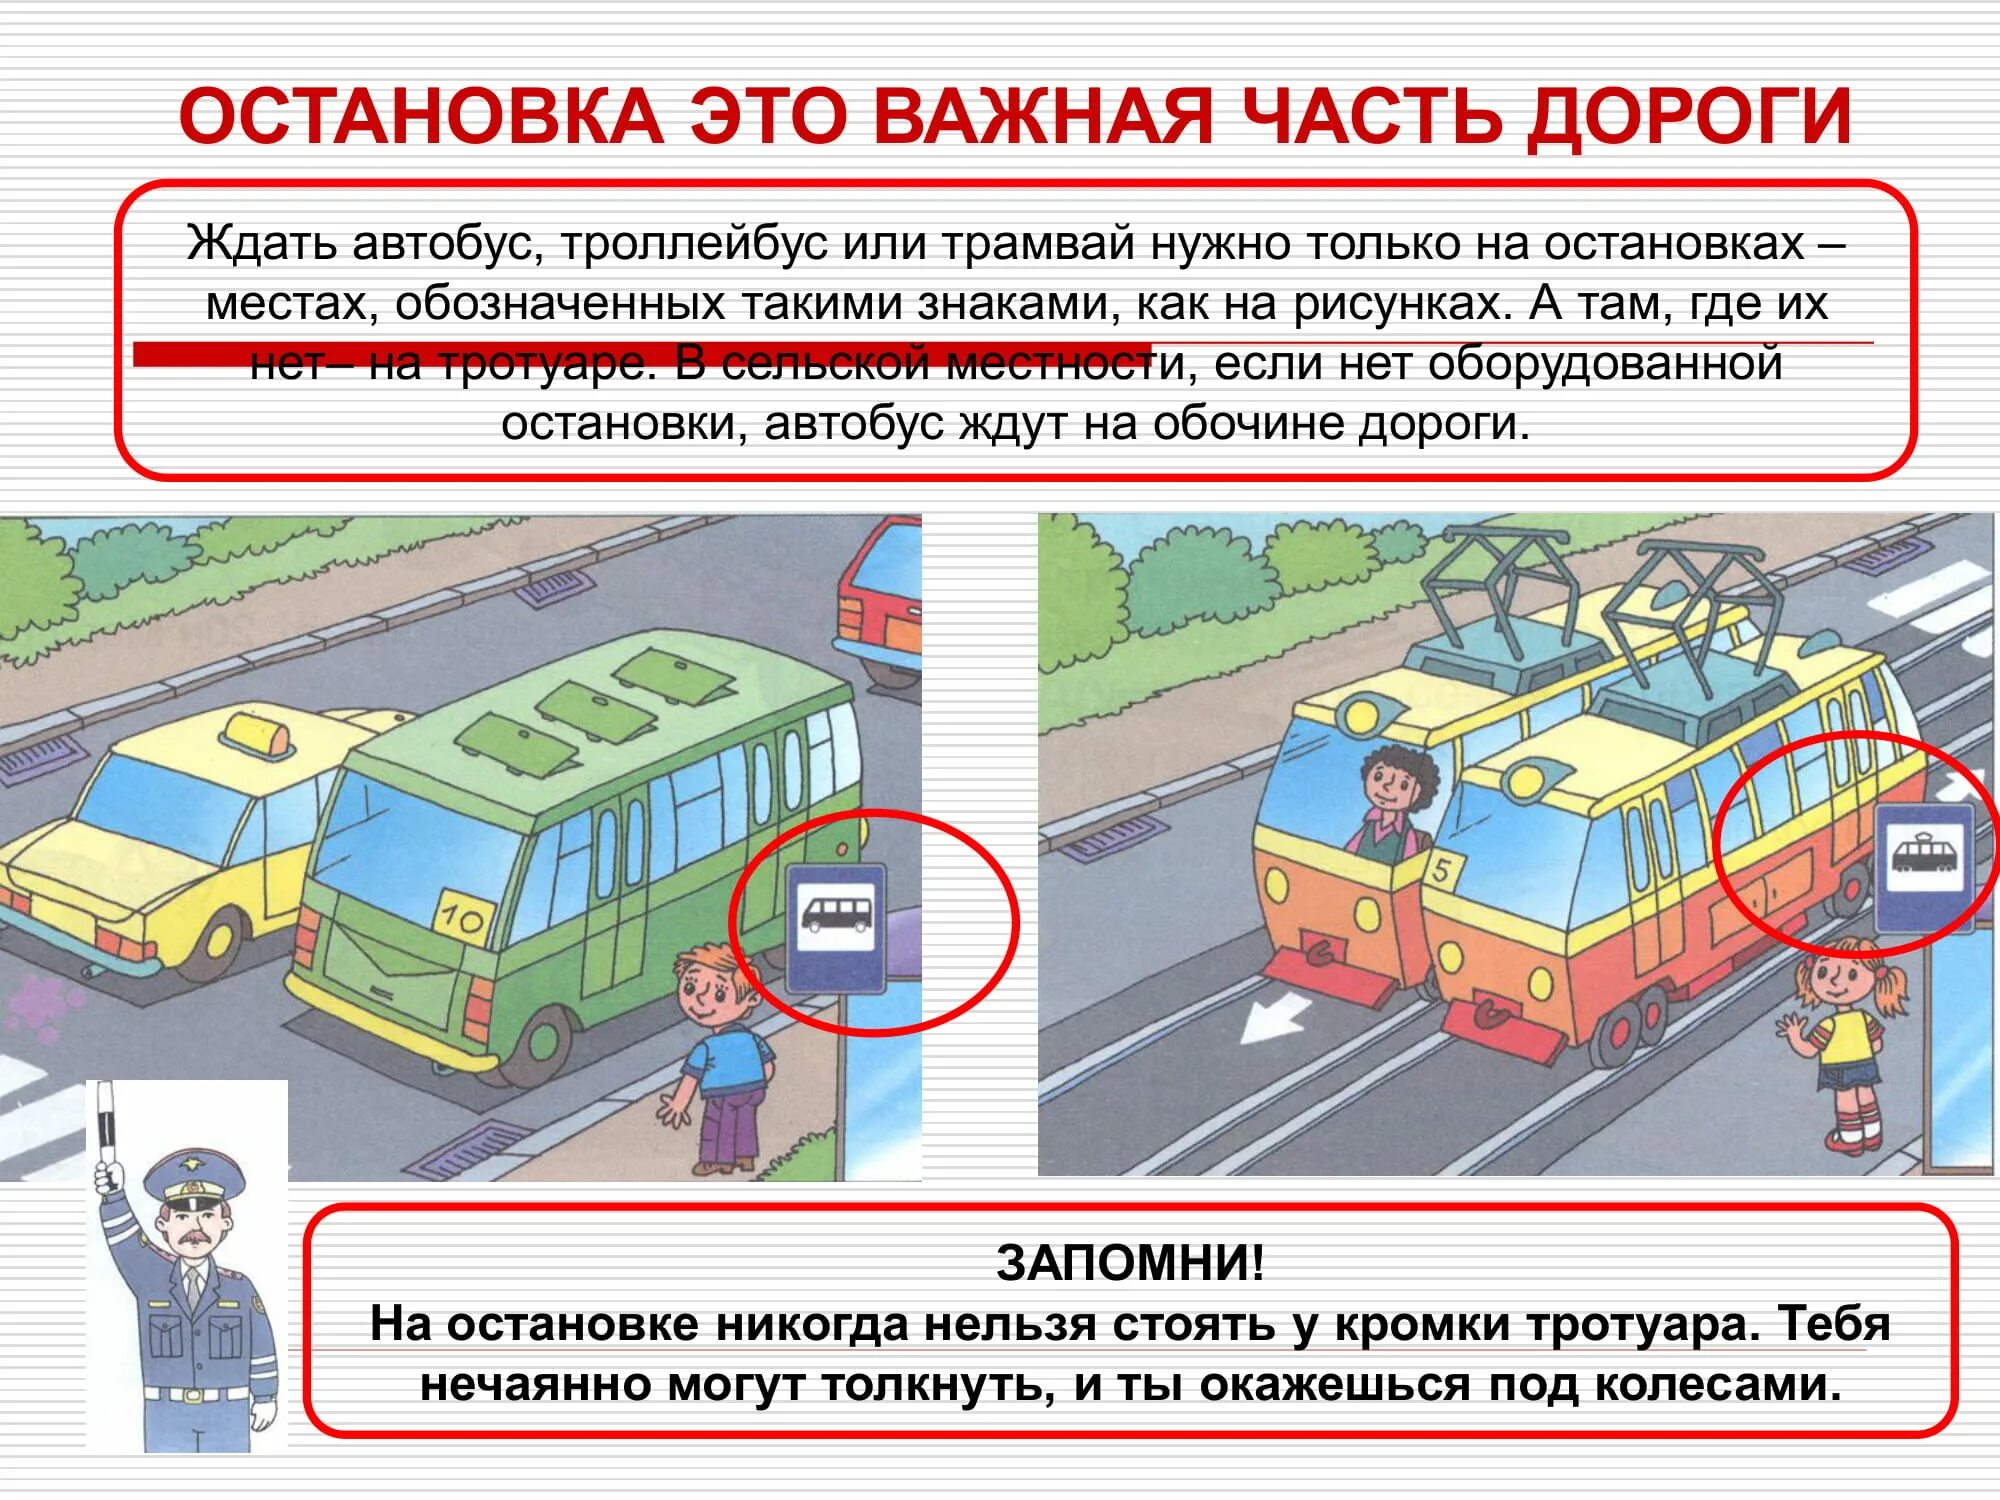 Правила поведения пассажира на остановке. Правила поведения на автобусной остановке. Поведение на остановке общественного транспорта. Безопасность пассажиров в транспорте.